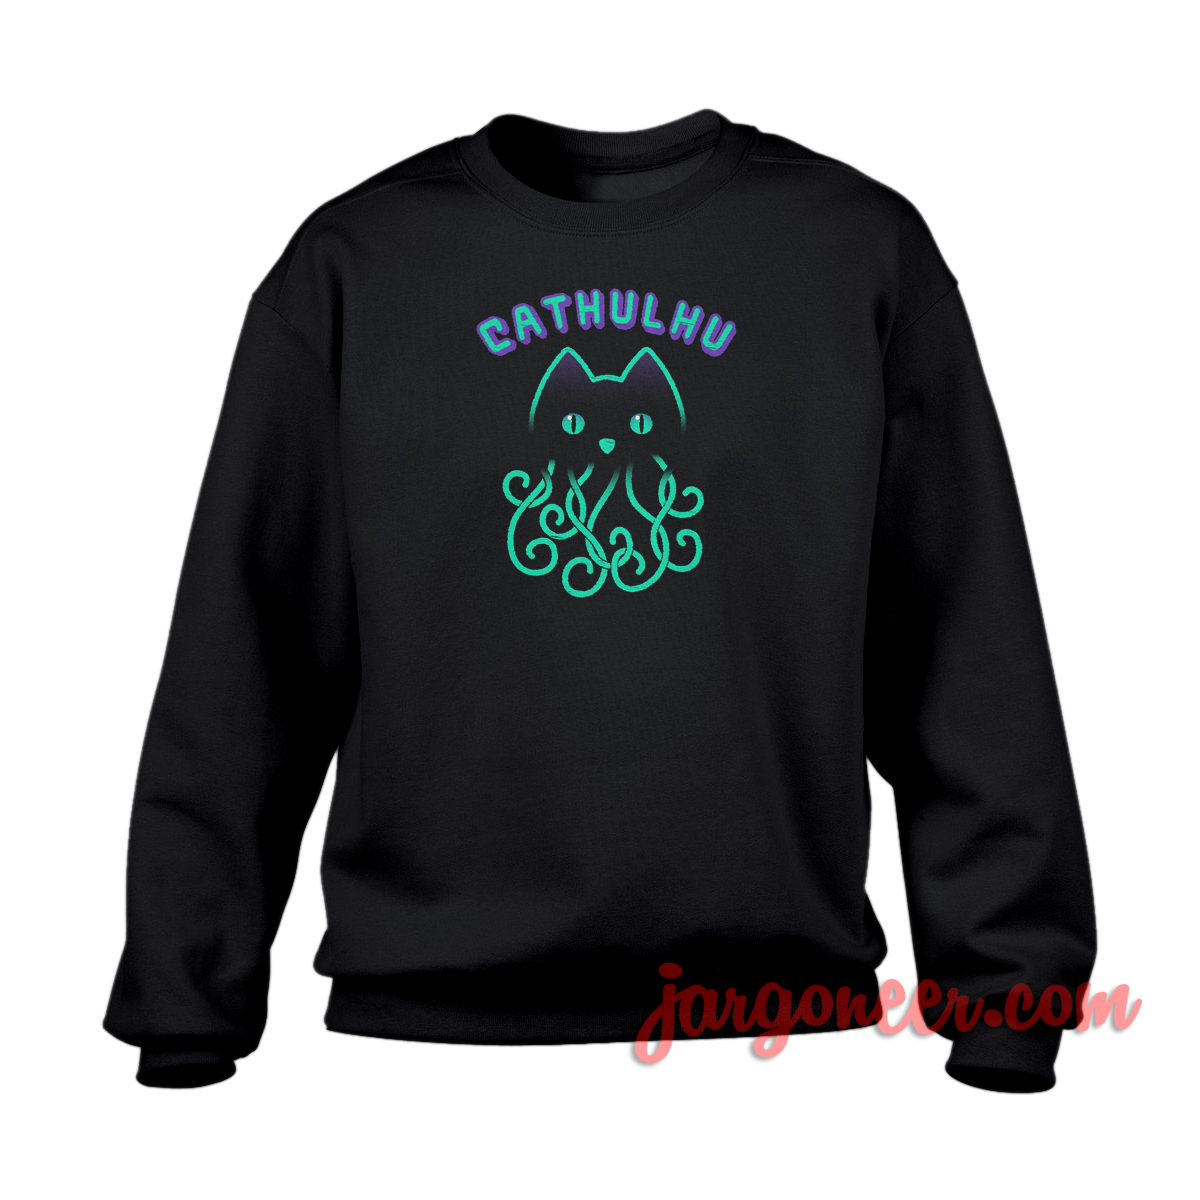 Cathulhu - Shop Unique Graphic Cool Shirt Designs